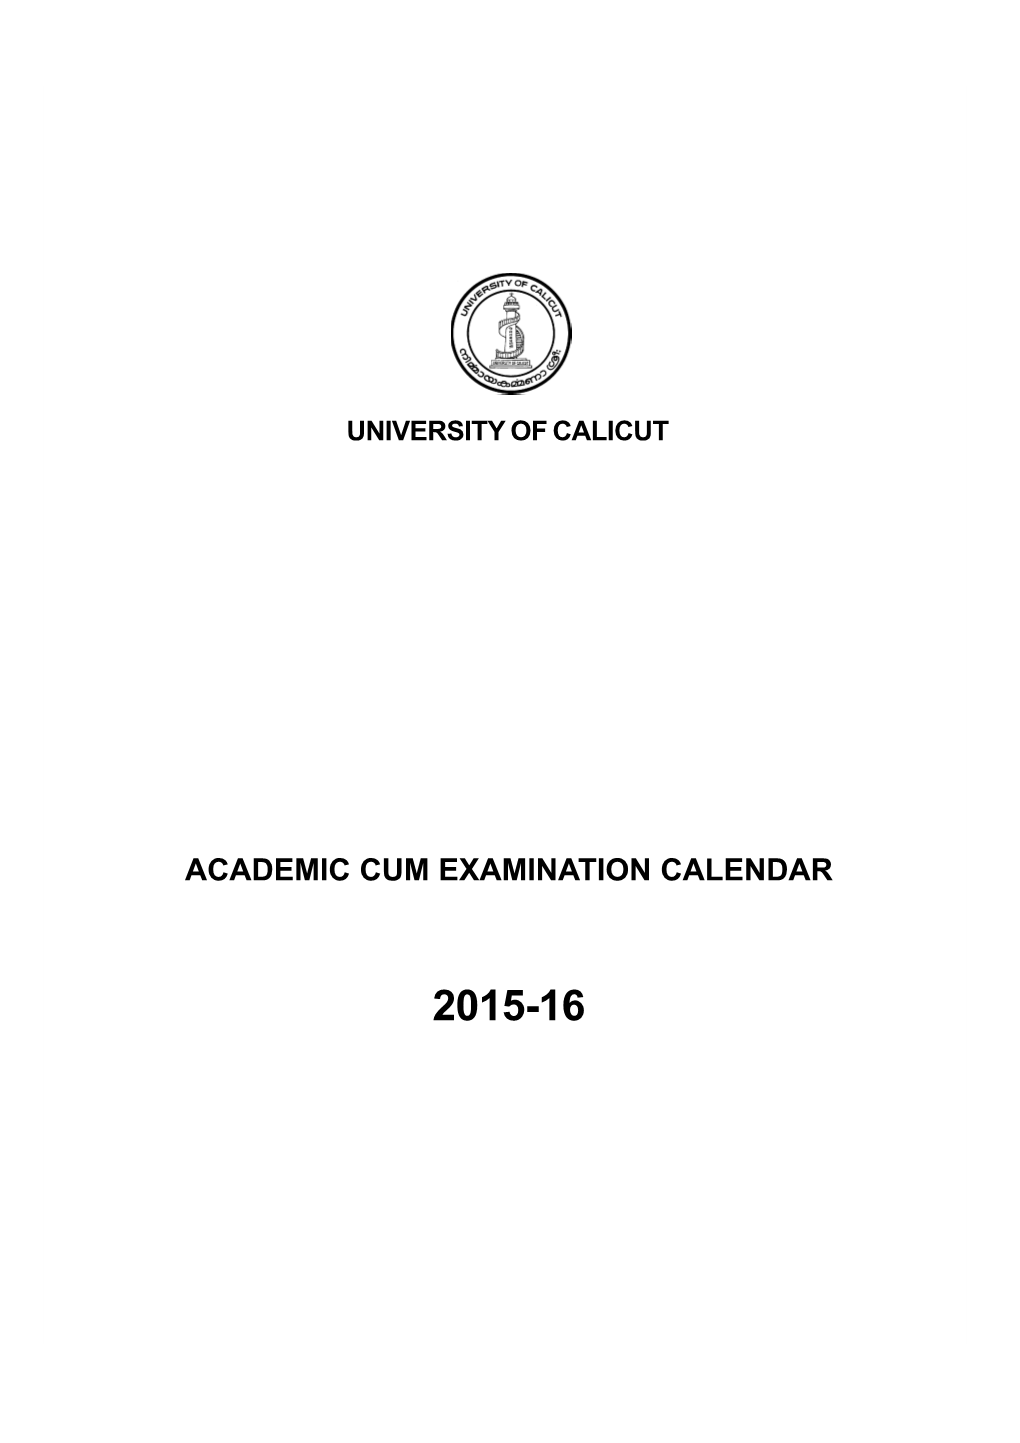 Academic Cum Examination Calendar